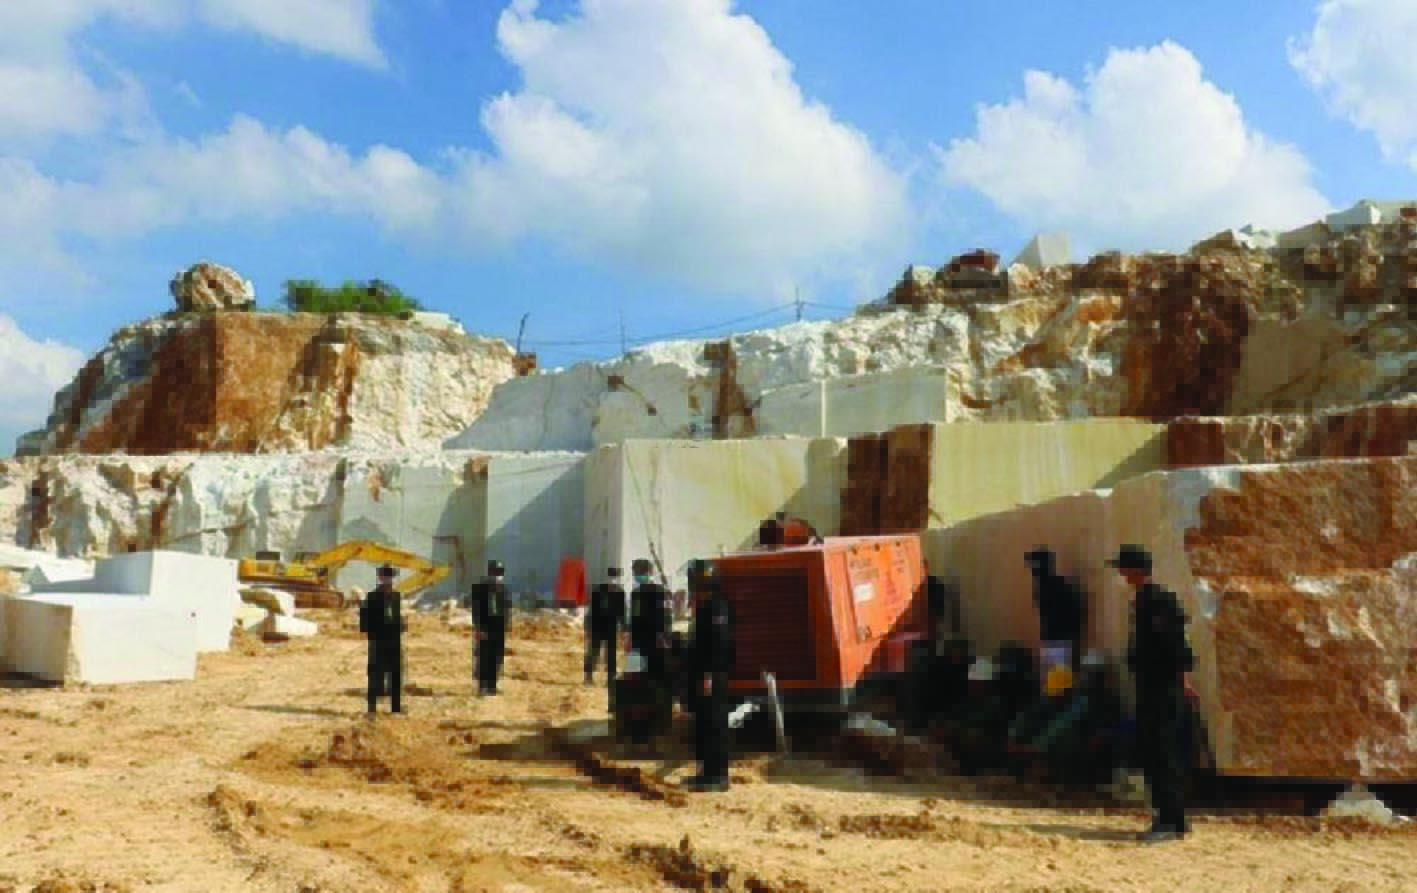  Tổ chức vây bắt khai thác đá trắng trái phép tại núi Phá Chủng thuộc xã Châu Lộc, Quỳ Hợp, Nghệ An.